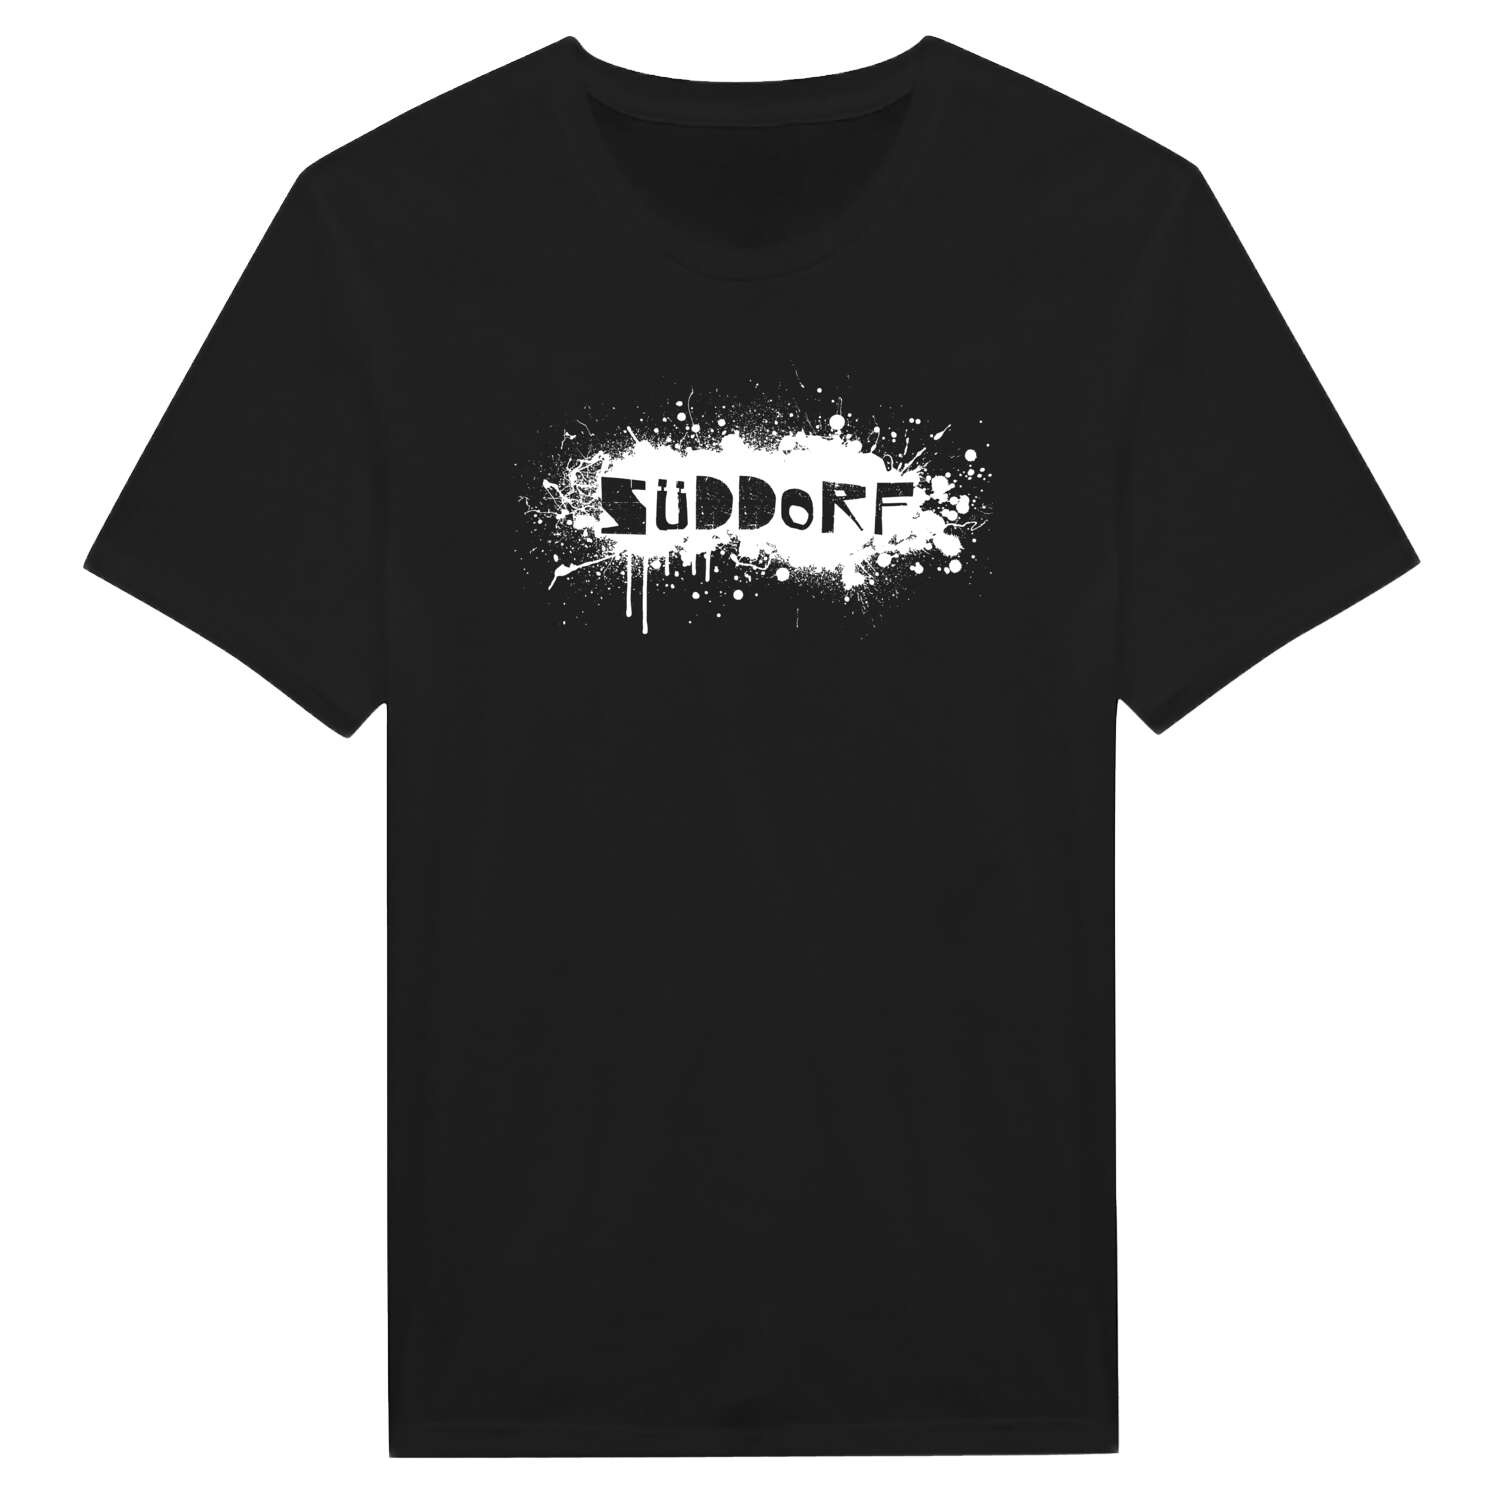 Süddorf T-Shirt »Paint Splash Punk«